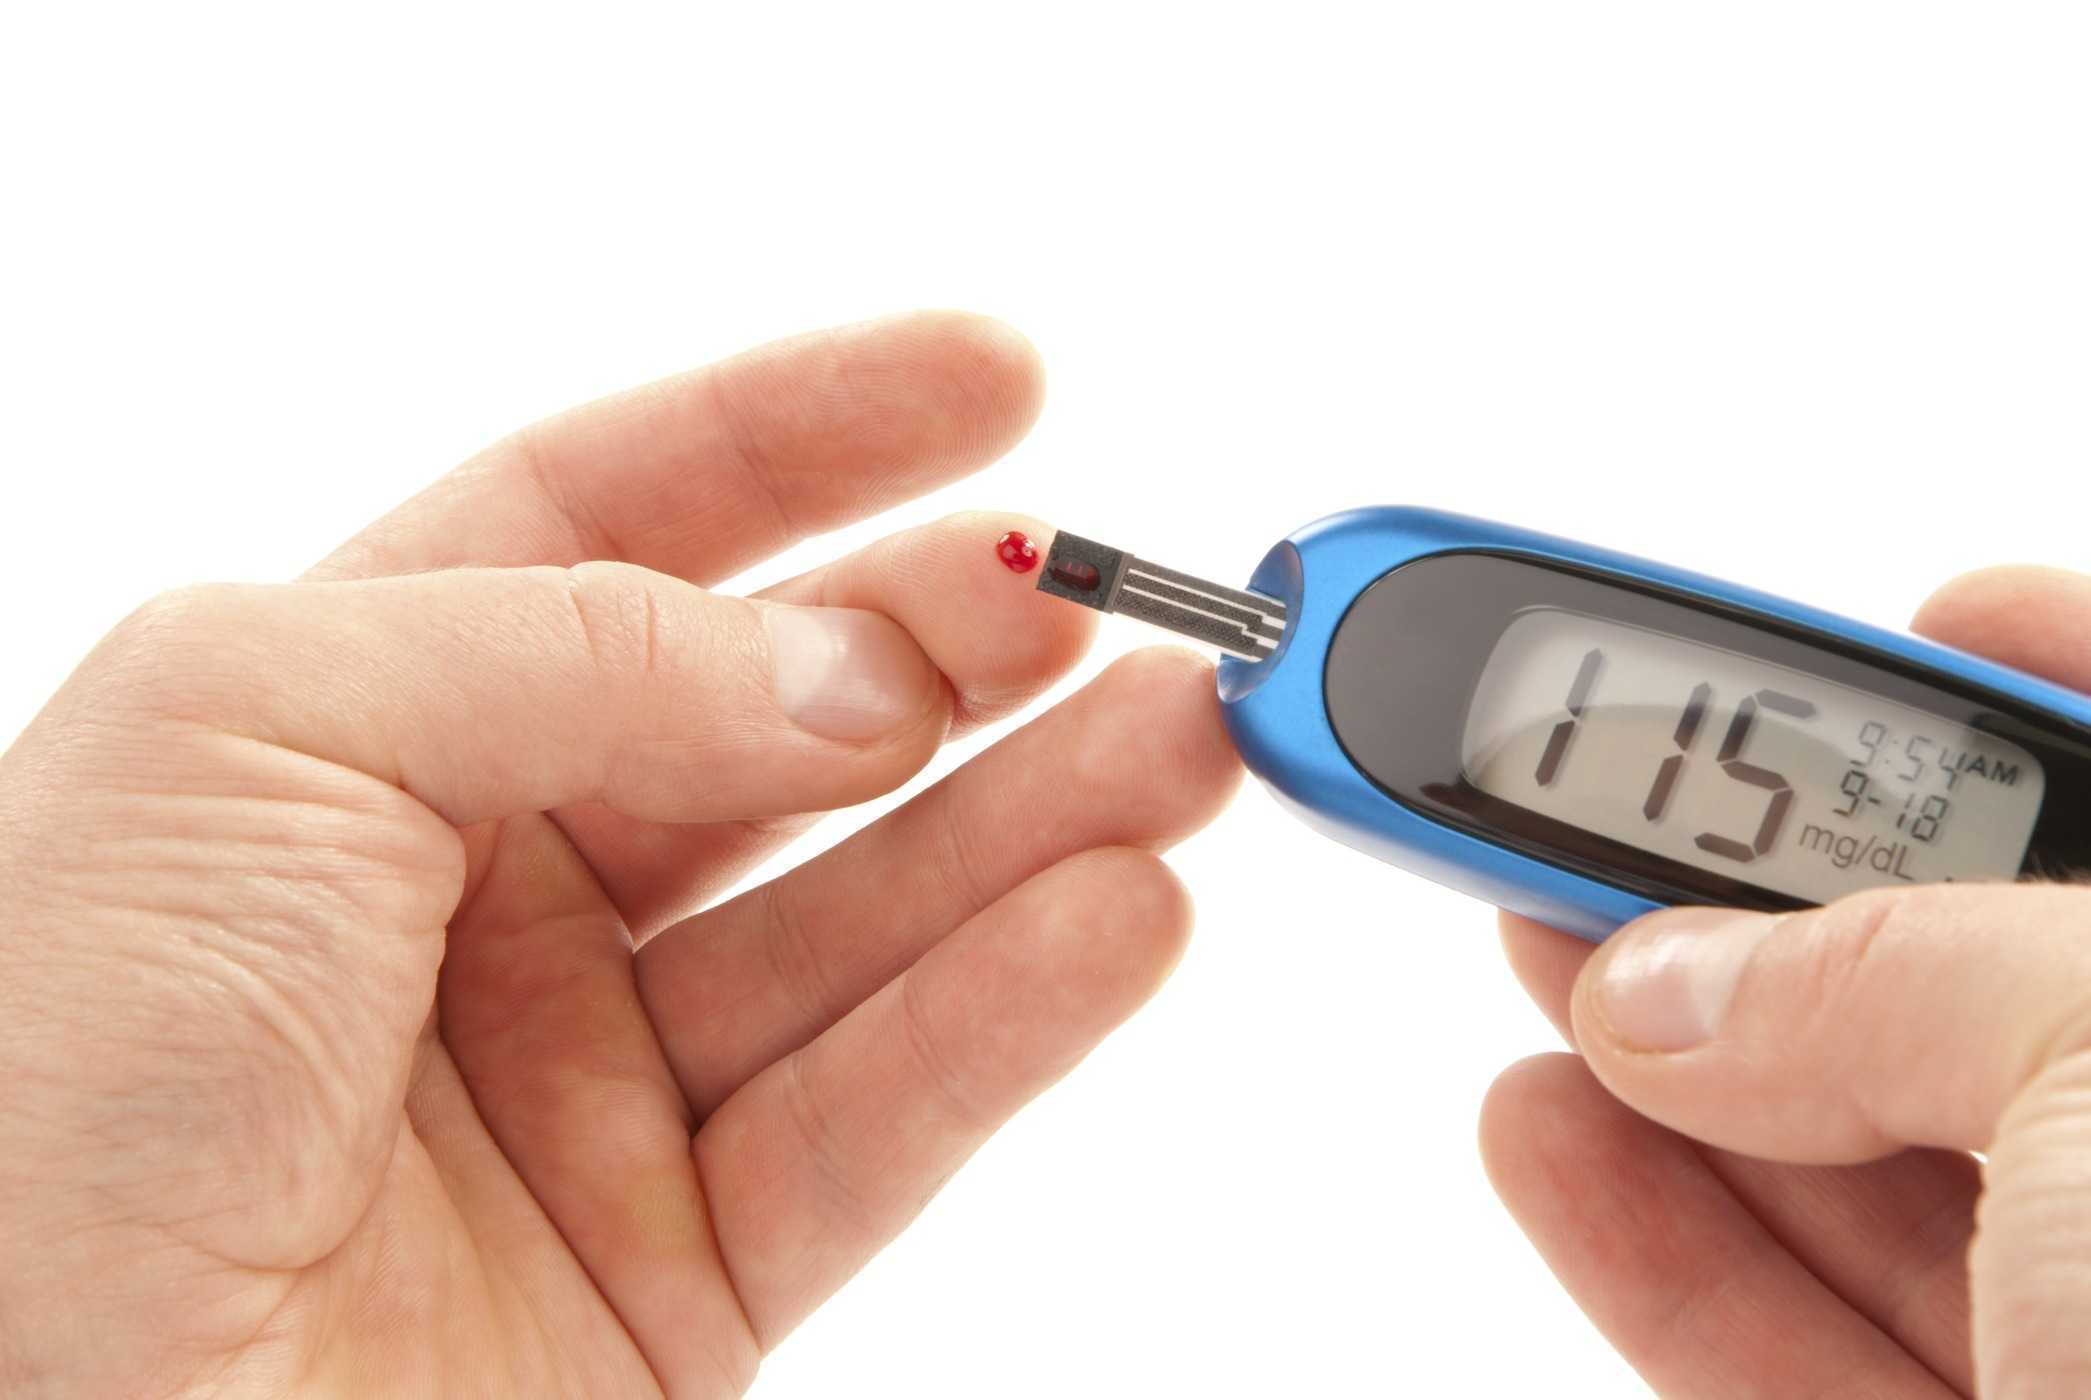   Tiểu nhiều lần trong ngày có thể là dấu hiệu của bệnh tiểu đường tuýp 1 và tuýp 2  